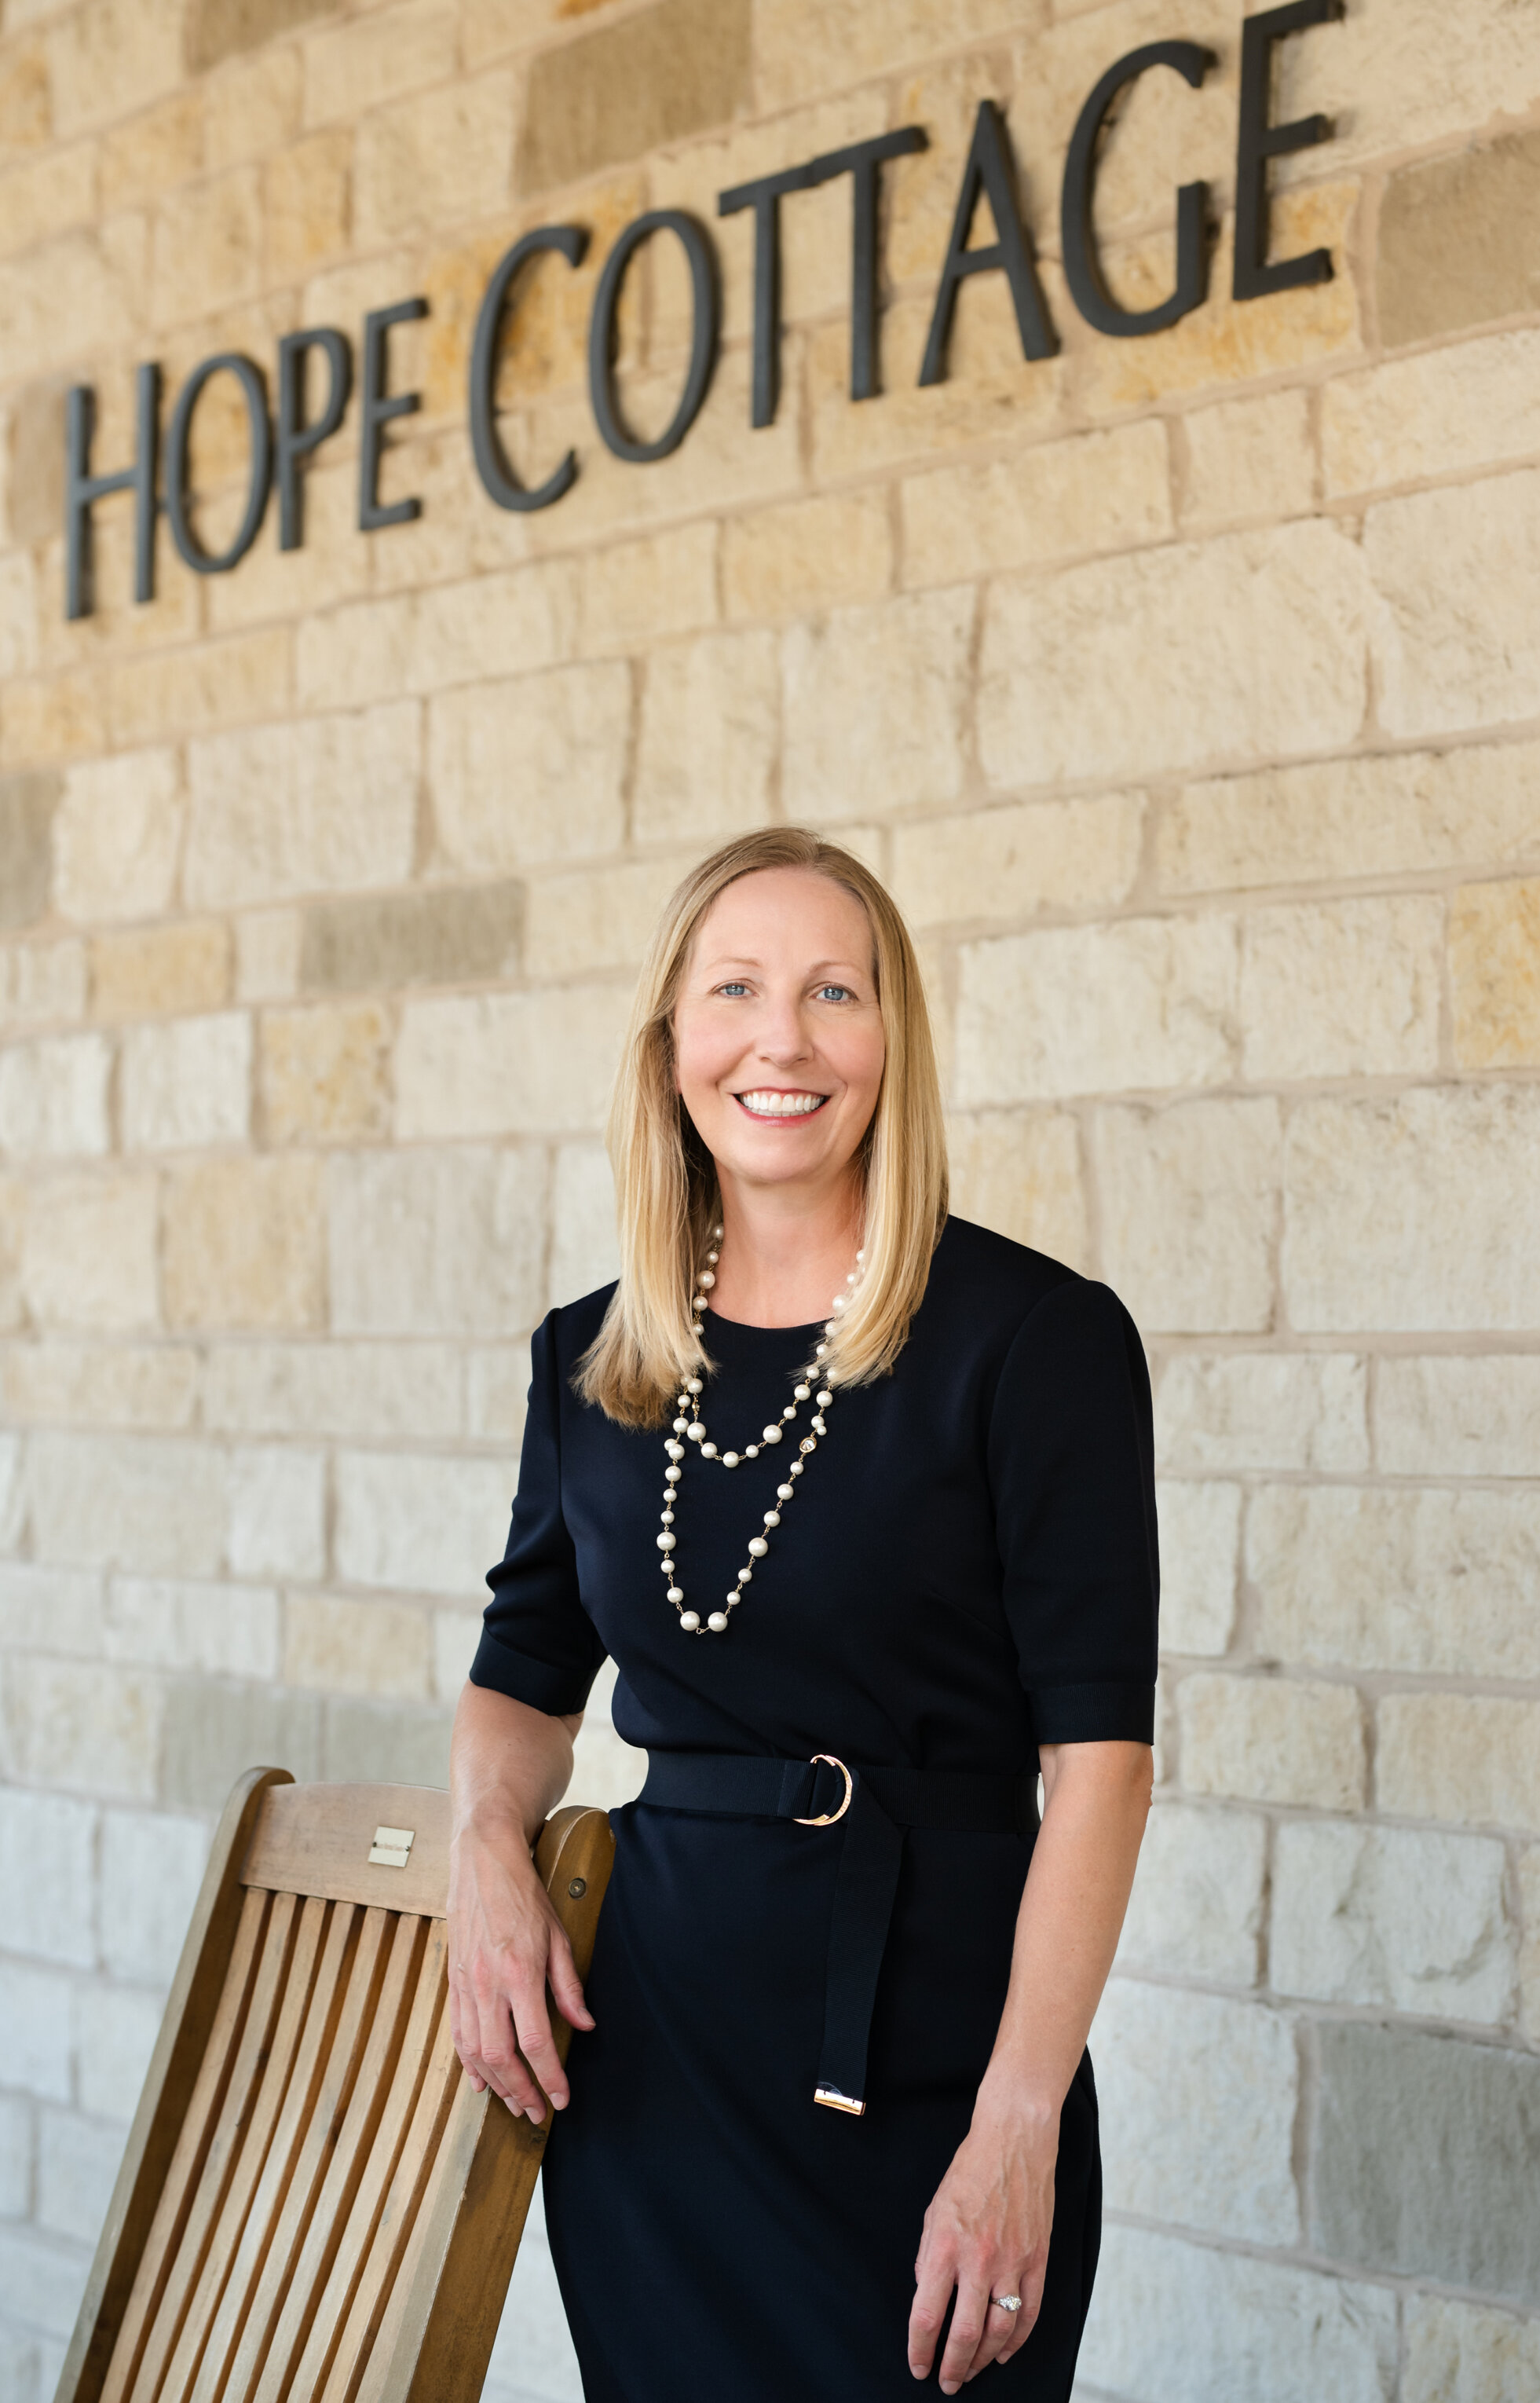 Teresa Lenling, CEO, Hope Cottage